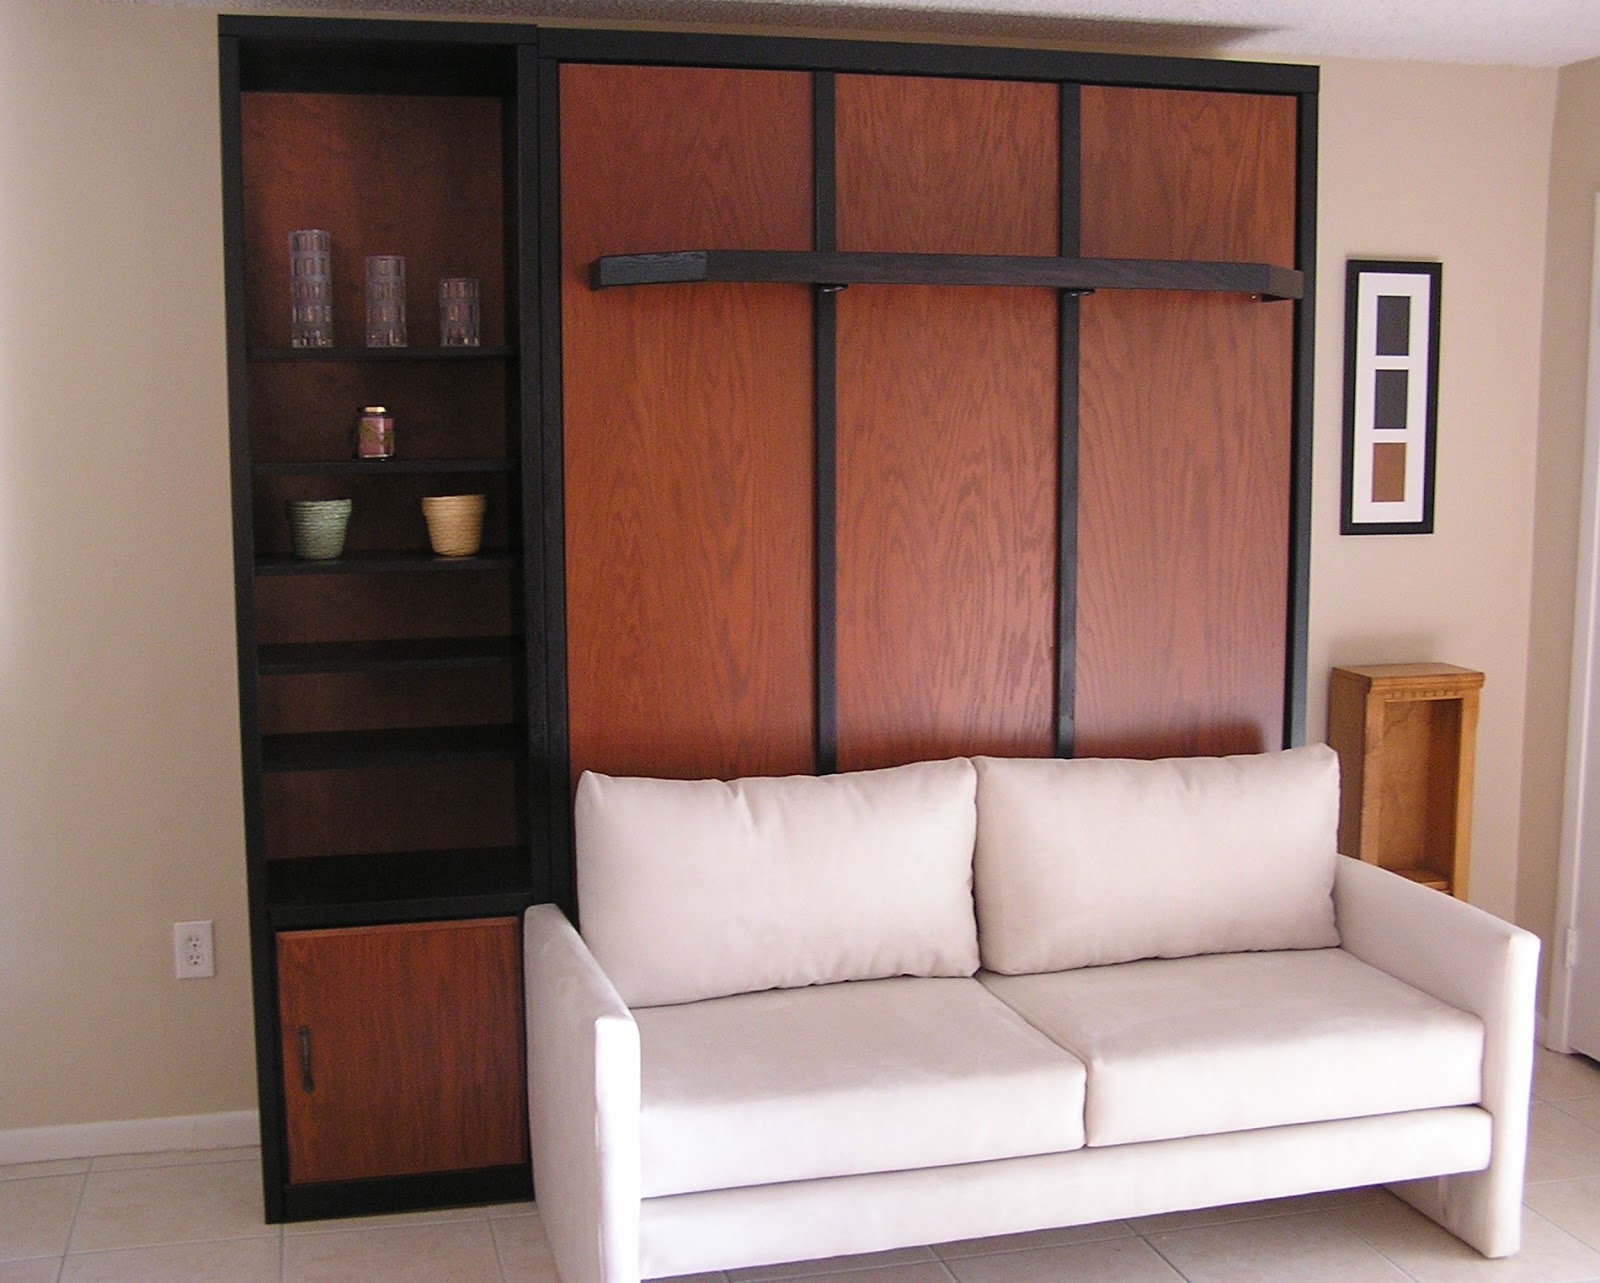 Desain Unique Sofa Living Room Kumpulan Desain Minimalis Interior